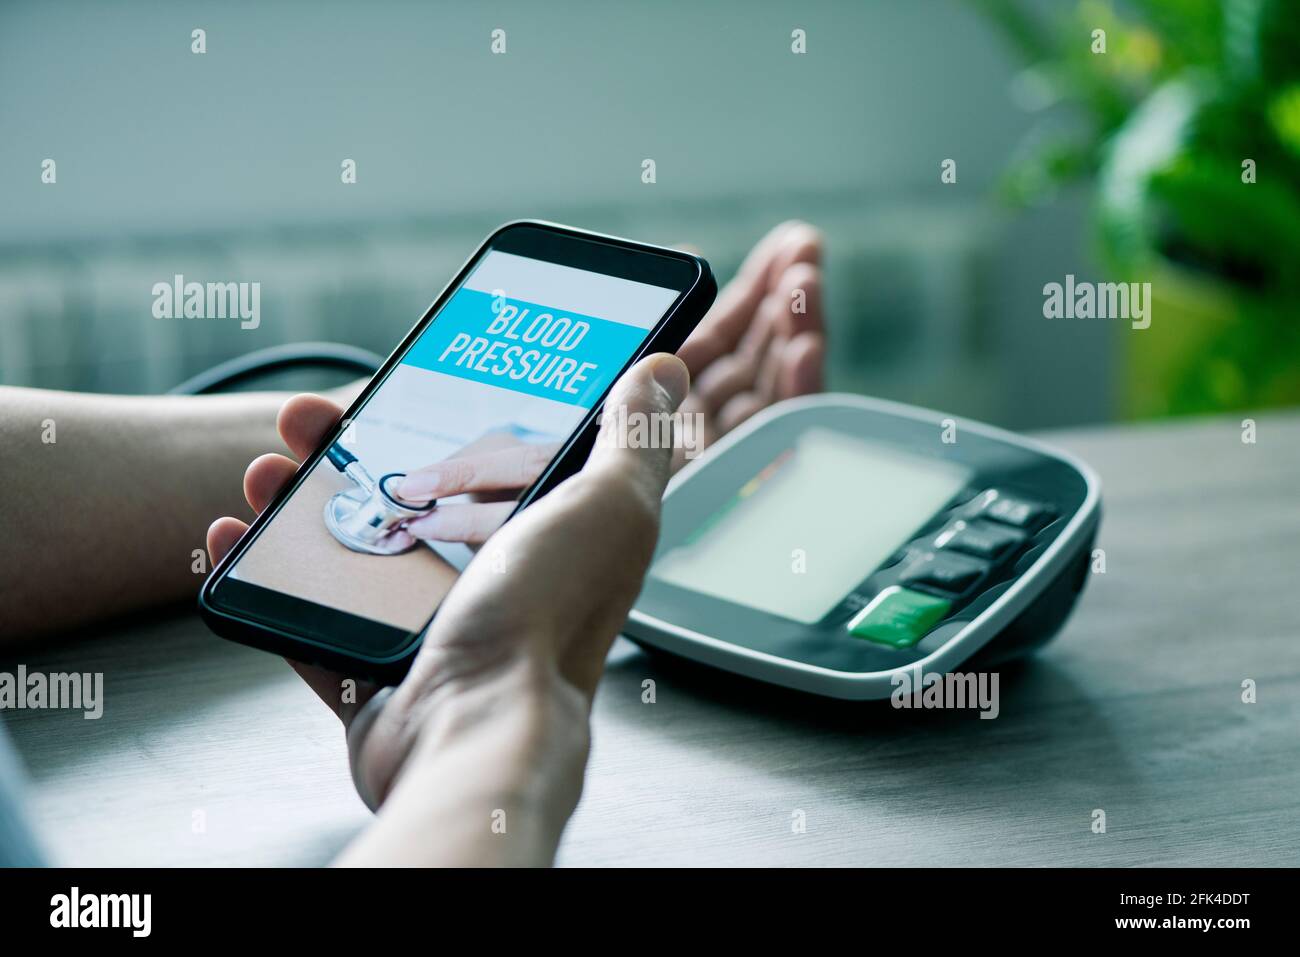 Ein kaukasischer Mann, der an einem Tisch sitzt, misst seinen Blutdruck mit  einem elektronischen Blutdruckmessgerät, während er sein Smartphone in den  Händen hält Stockfotografie - Alamy